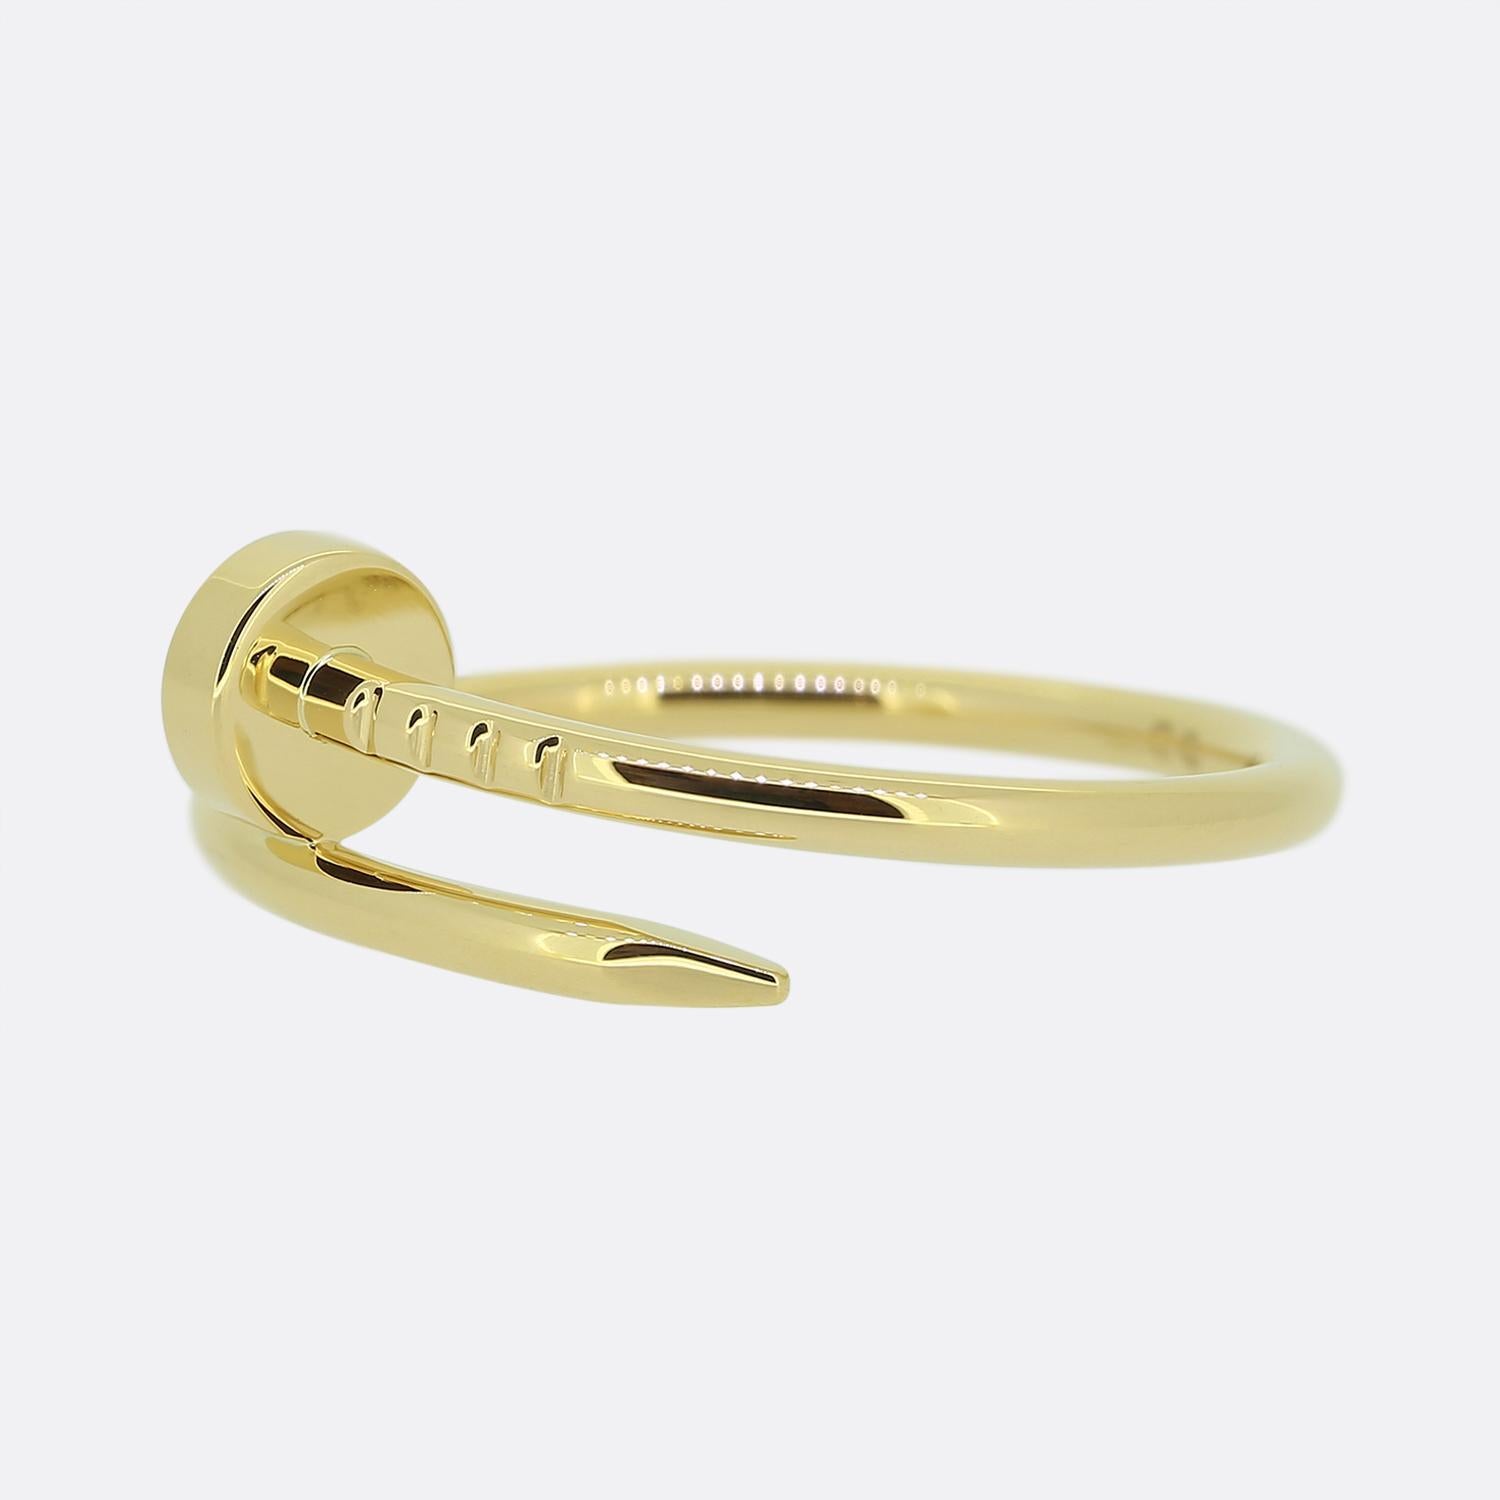 Hier haben wir einen exzellent gearbeiteten Ring aus 18 Karat Gelbgold aus dem weltbekannten Schmuckhaus Cartier. Dieses Stück ist Teil der kultigen 